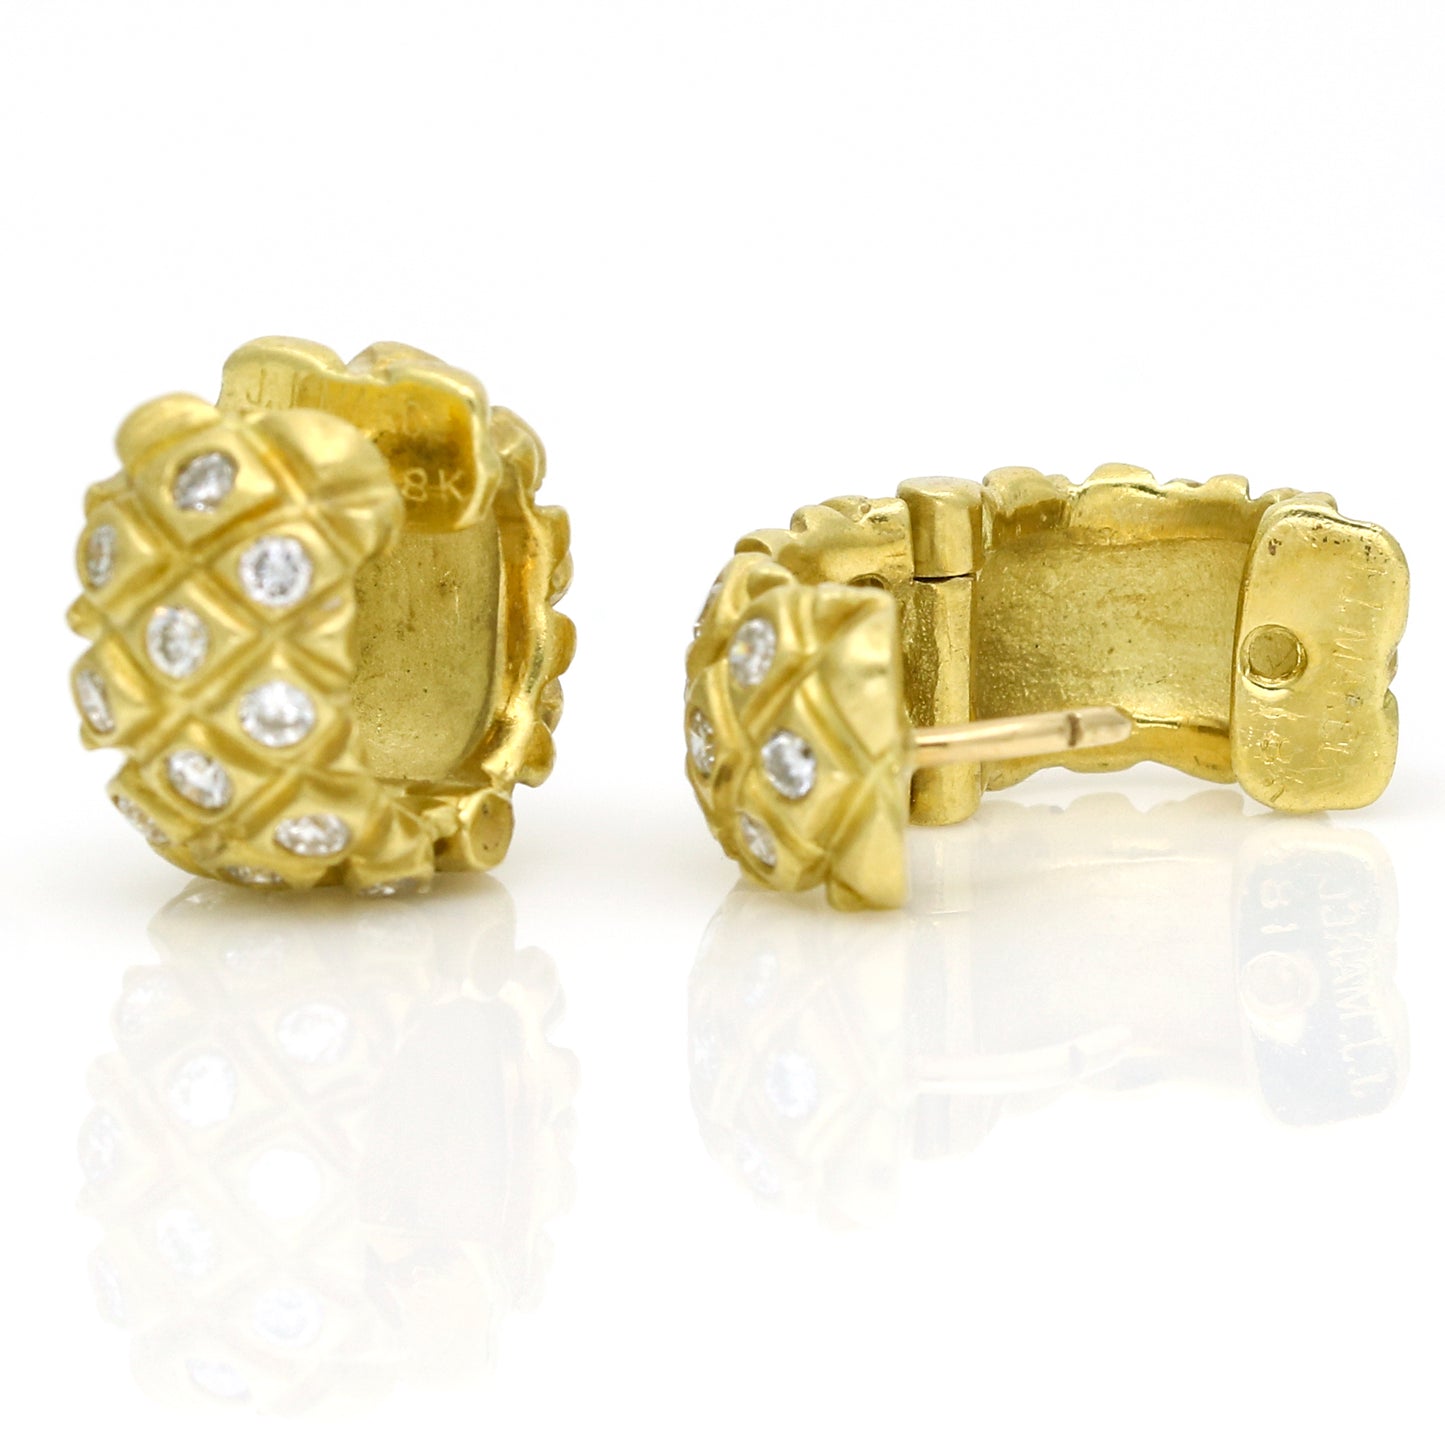 J.J. Marco 18K Yellow Gold Pineapple Pattern Hoop Earrings with Diamonds